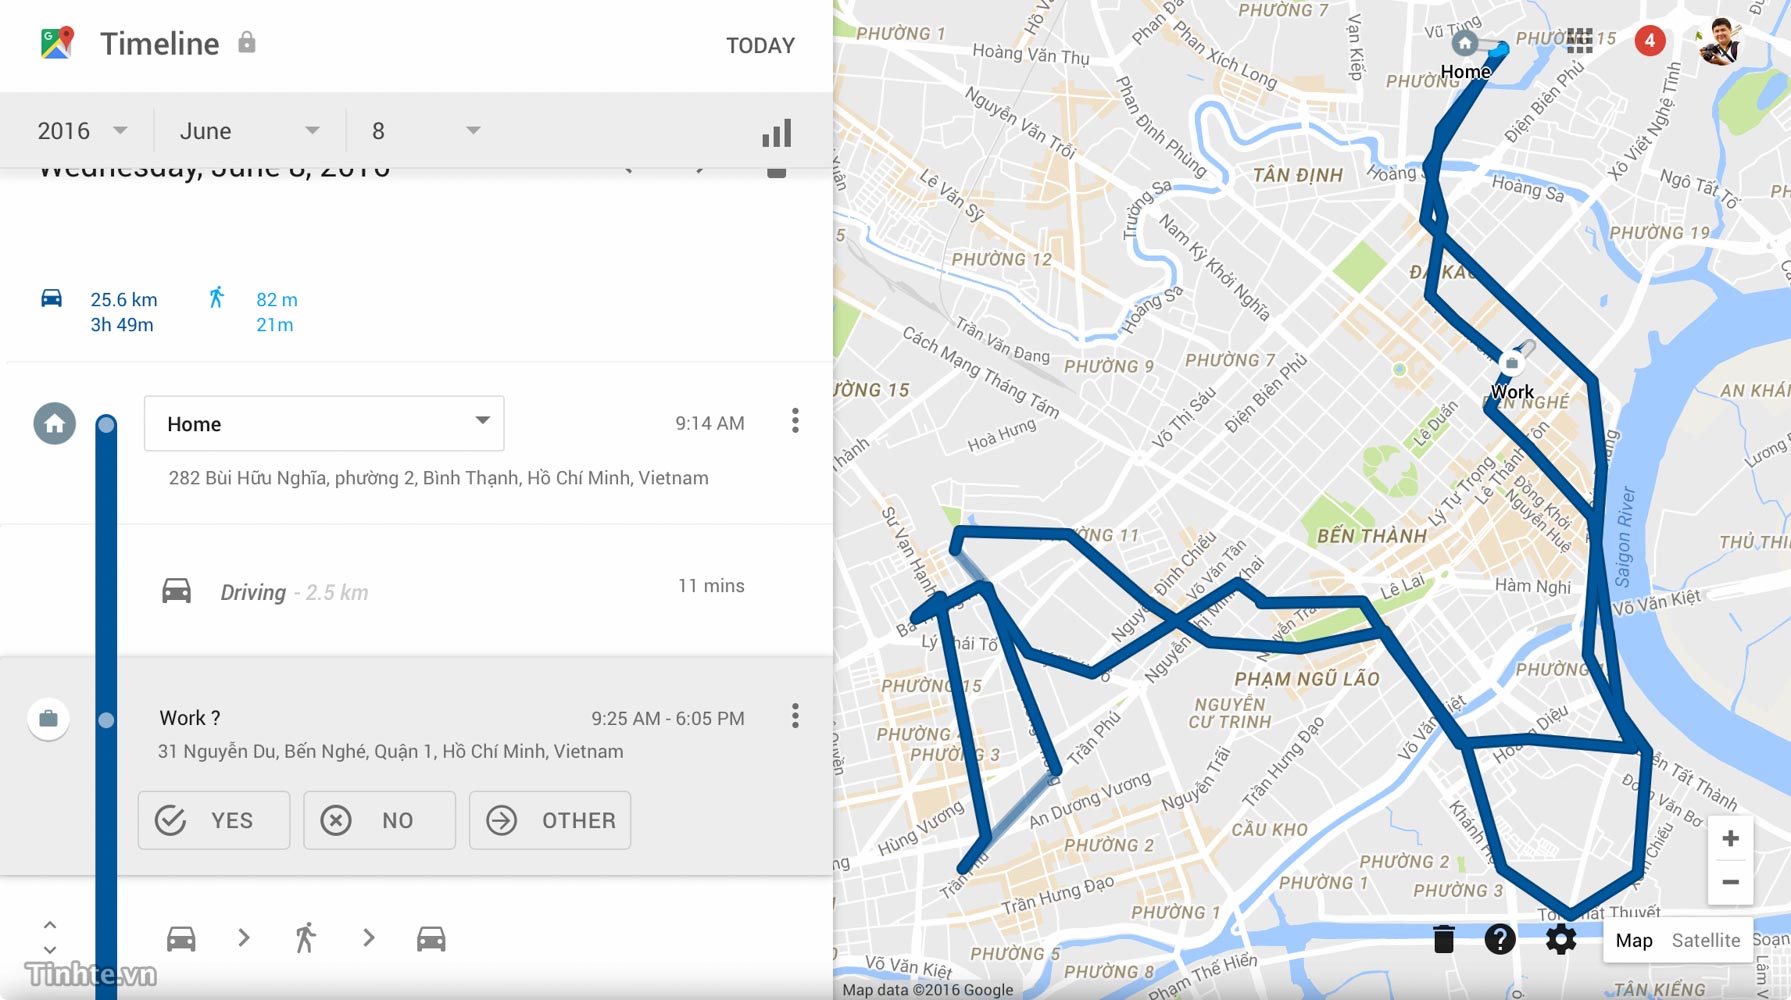 Thủ thuật Google Maps: Hướng dẫn sử dụng Google Maps một cách thông minh hơn bao giờ hết với những thủ thuật tiện ích. Ví dụ như tập trung vào tìm kiếm cửa hàng, trang trại hay khách sạn nằm trong khu vực mà bạn đang đi, hay sử dụng tính năng điều hướng nhanh với chỉ một cái chạm. Thủ thuật Google Maps chắc chắn sẽ giúp bạn nắm bắt được những tính năng hữu ích của ứng dụng.